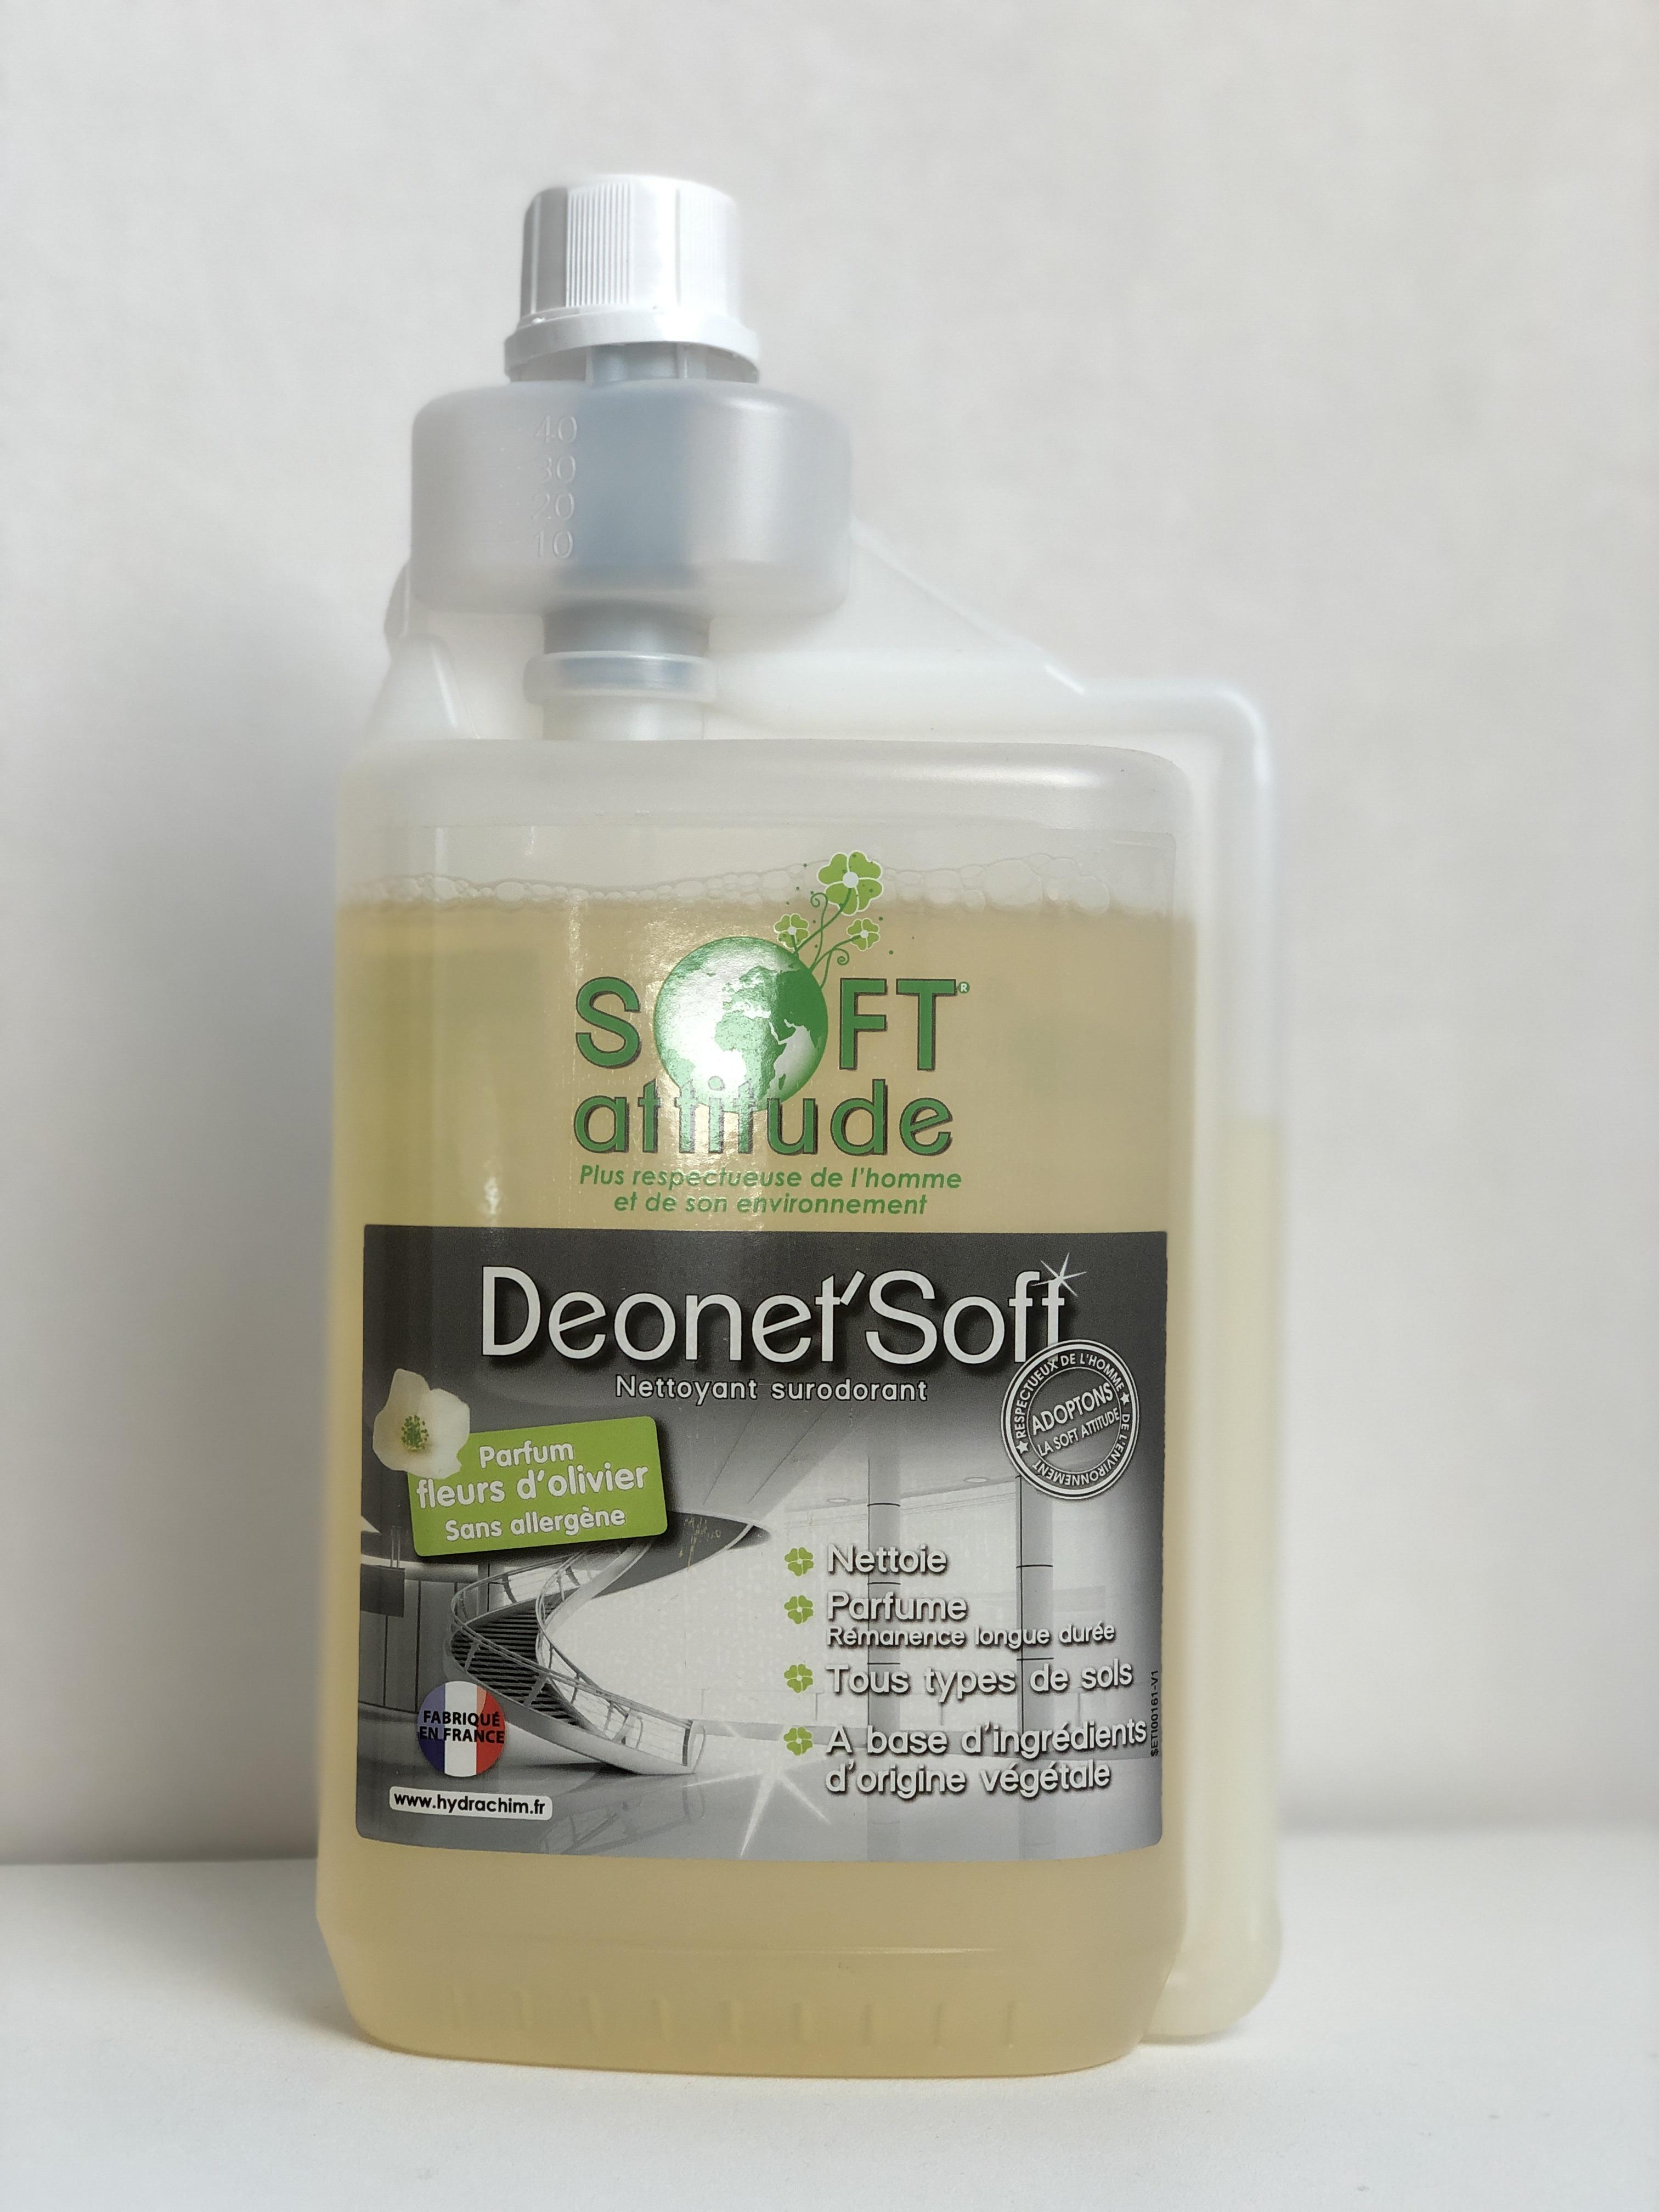 Deonet Soft produit détergent sol fleurs d olivier